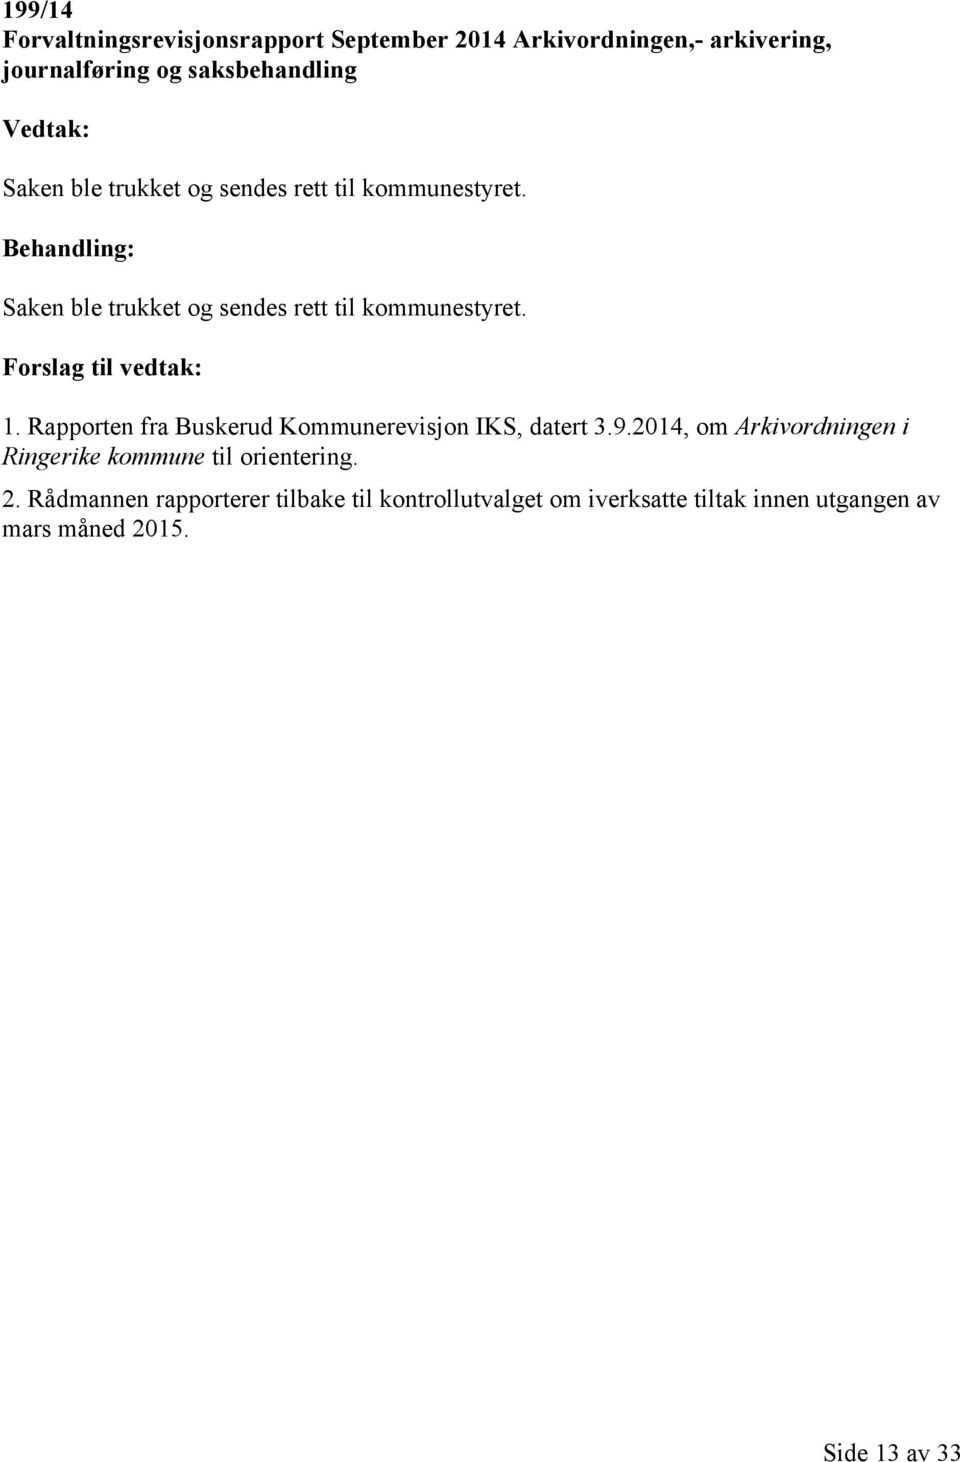 Forslag til vedtak: 1. Rapporten fra Buskerud Kommunerevisjon IKS, datert 3.9.